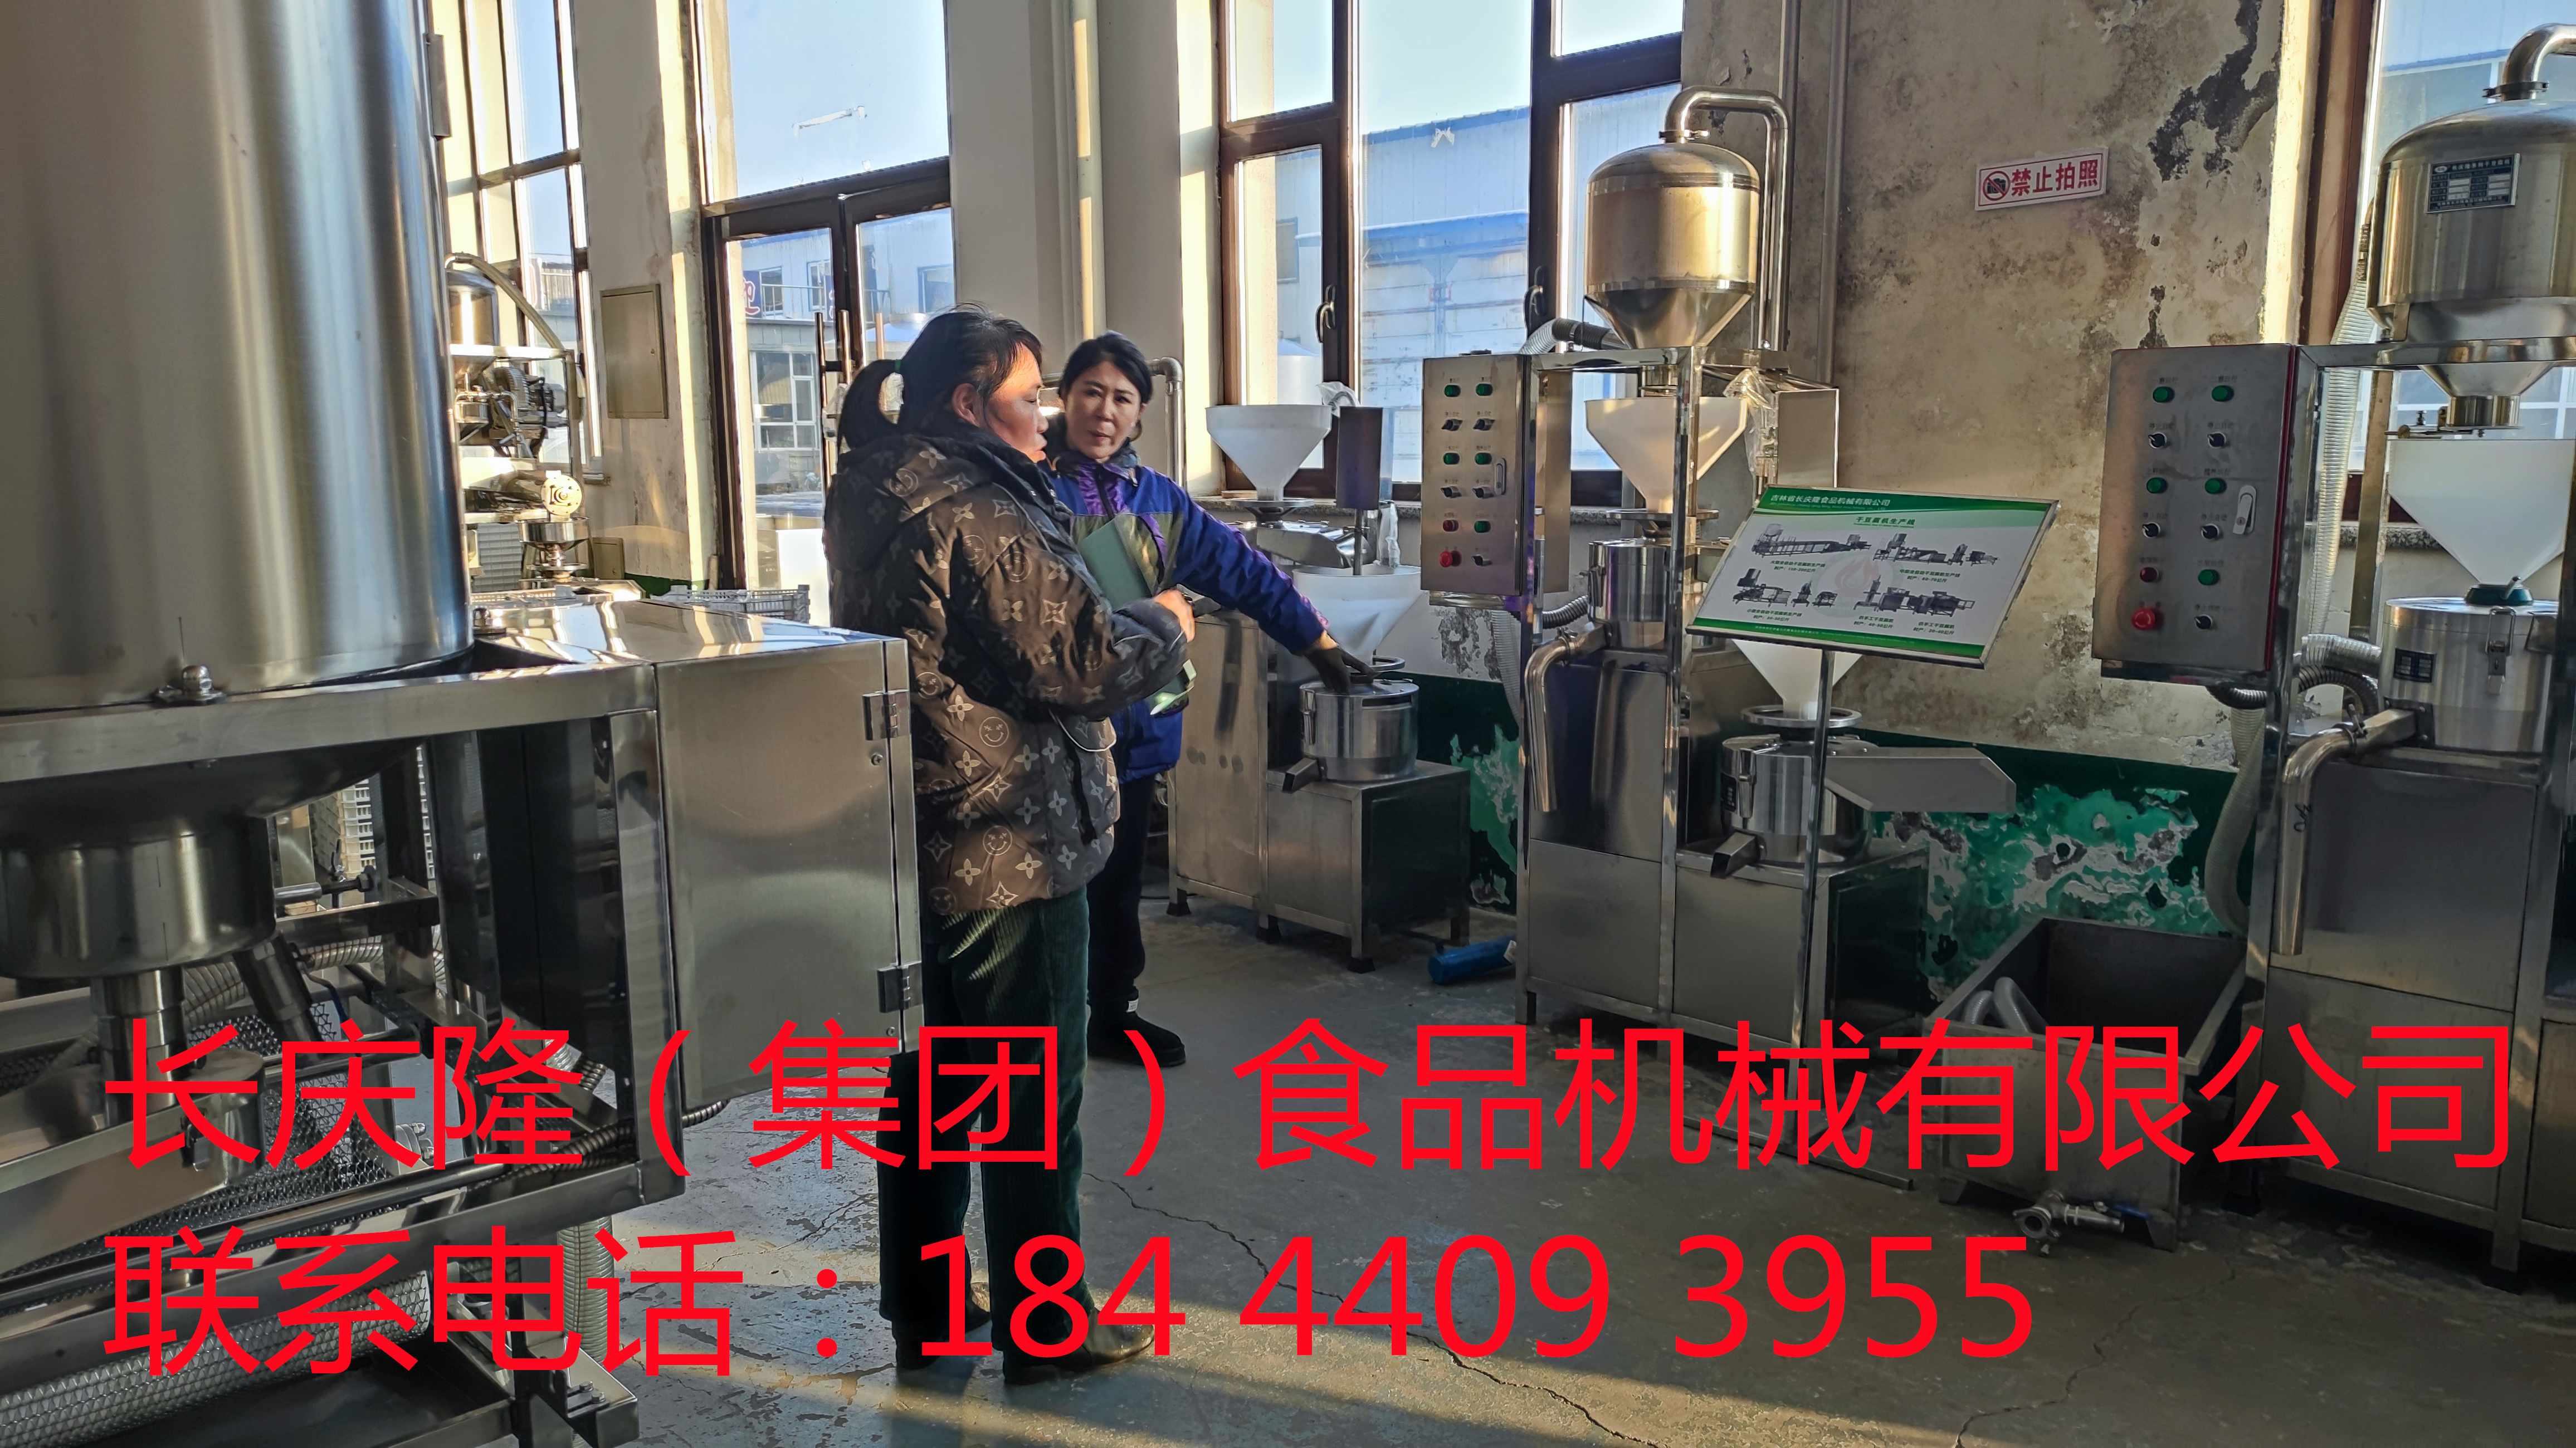 珲春客户今天来到长庆隆，订购了150型凌海双连磨一台，签订合同中。 (1)_副本.jpg